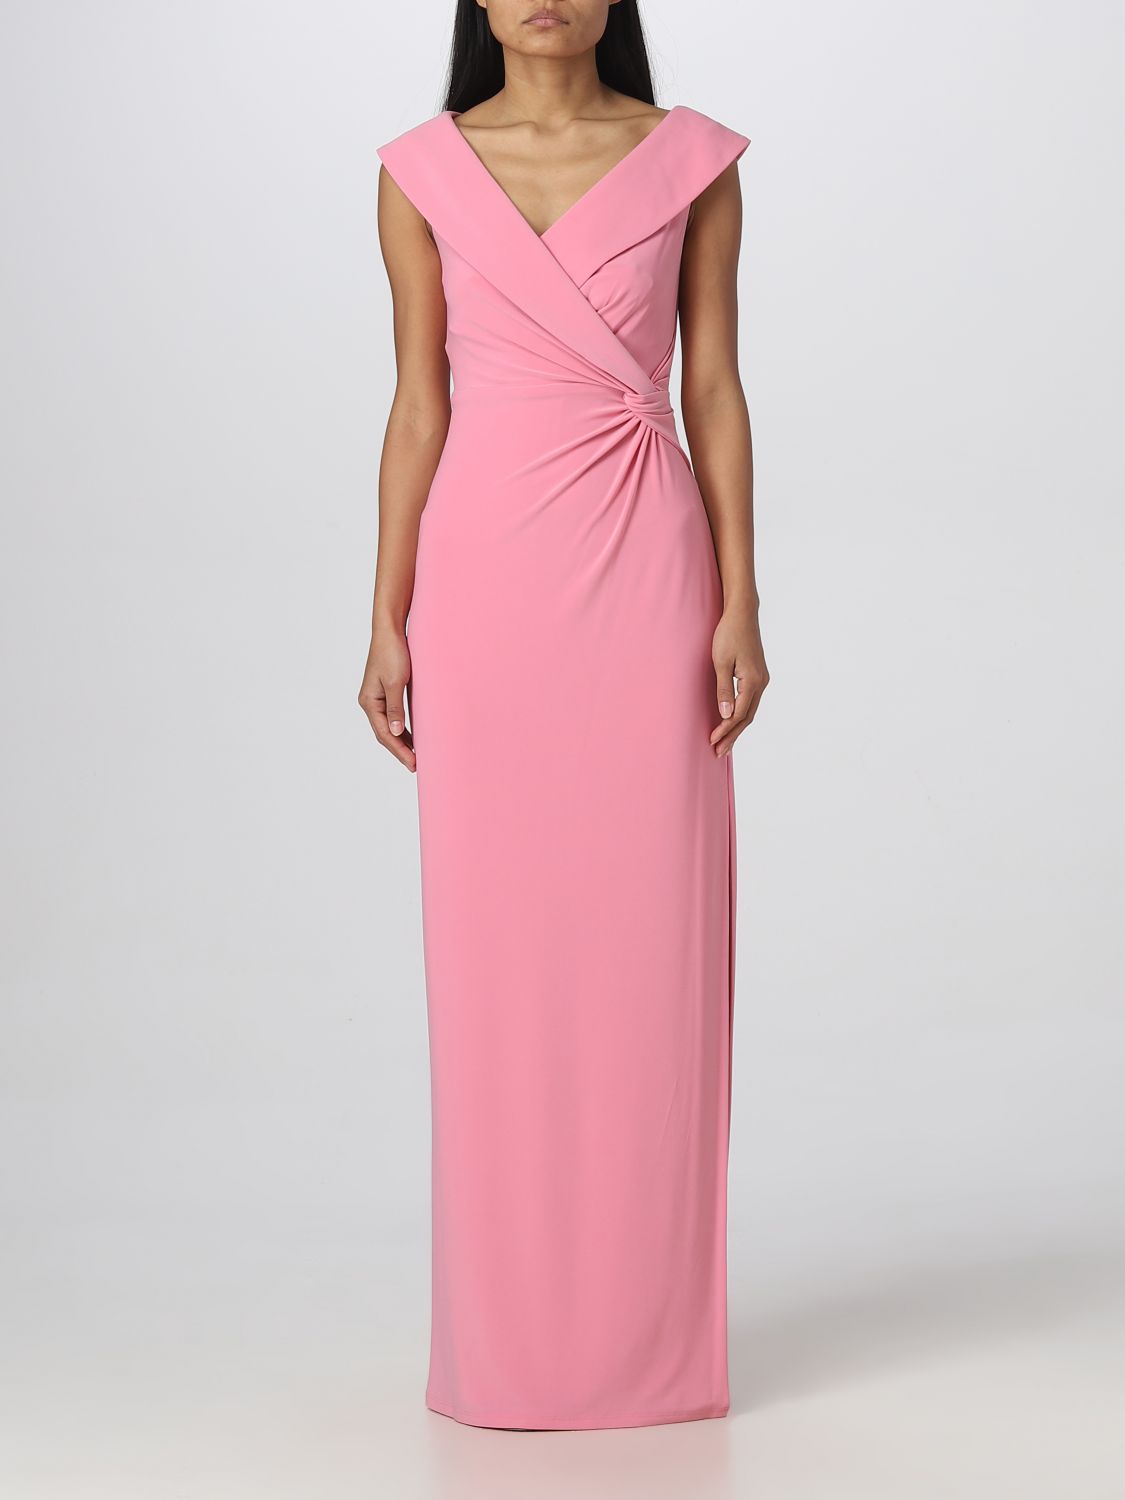 LAUREN RALPH LAUREN: dress for woman - Pink | Lauren Ralph Lauren dress  253863940 online on 